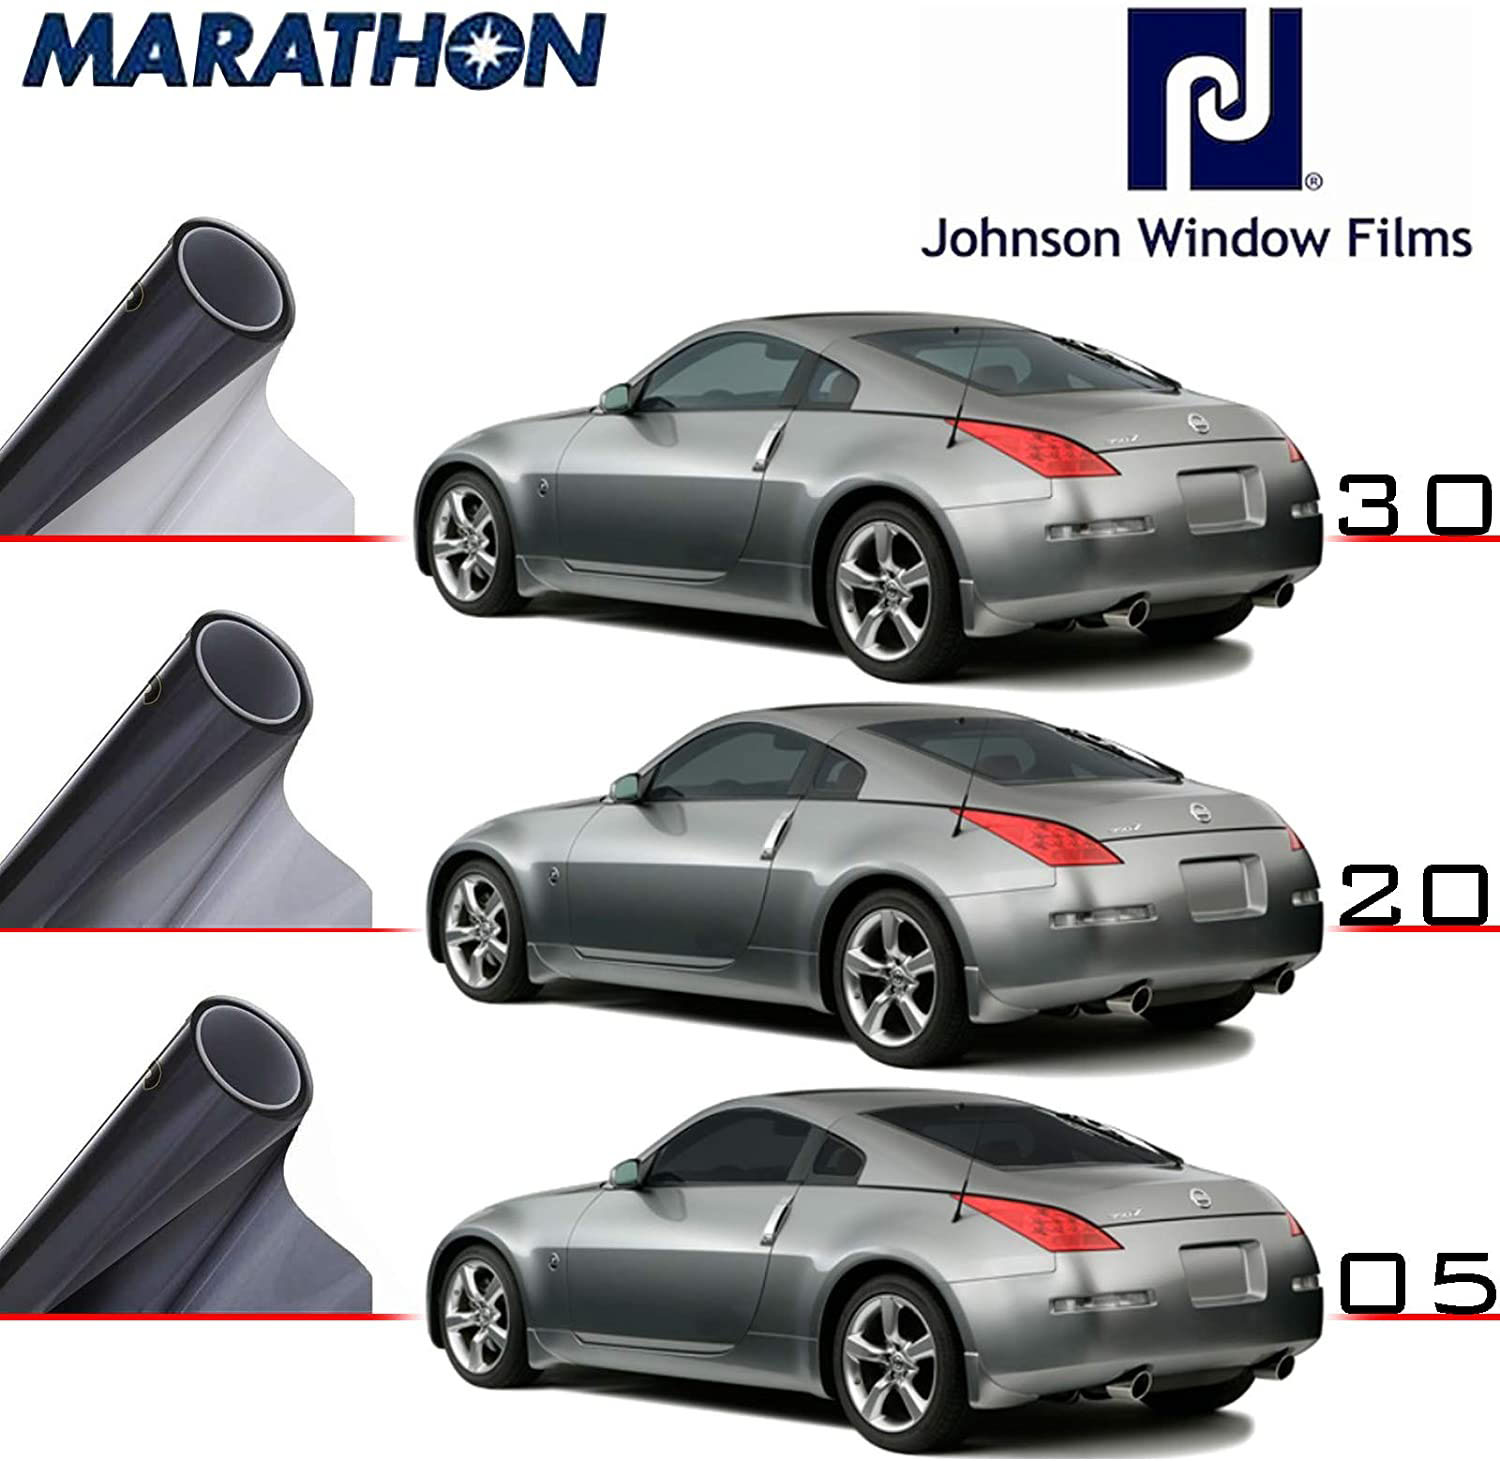 Pellicola Oscurante Vetri Johnson Marathon Professionale 30,5m x